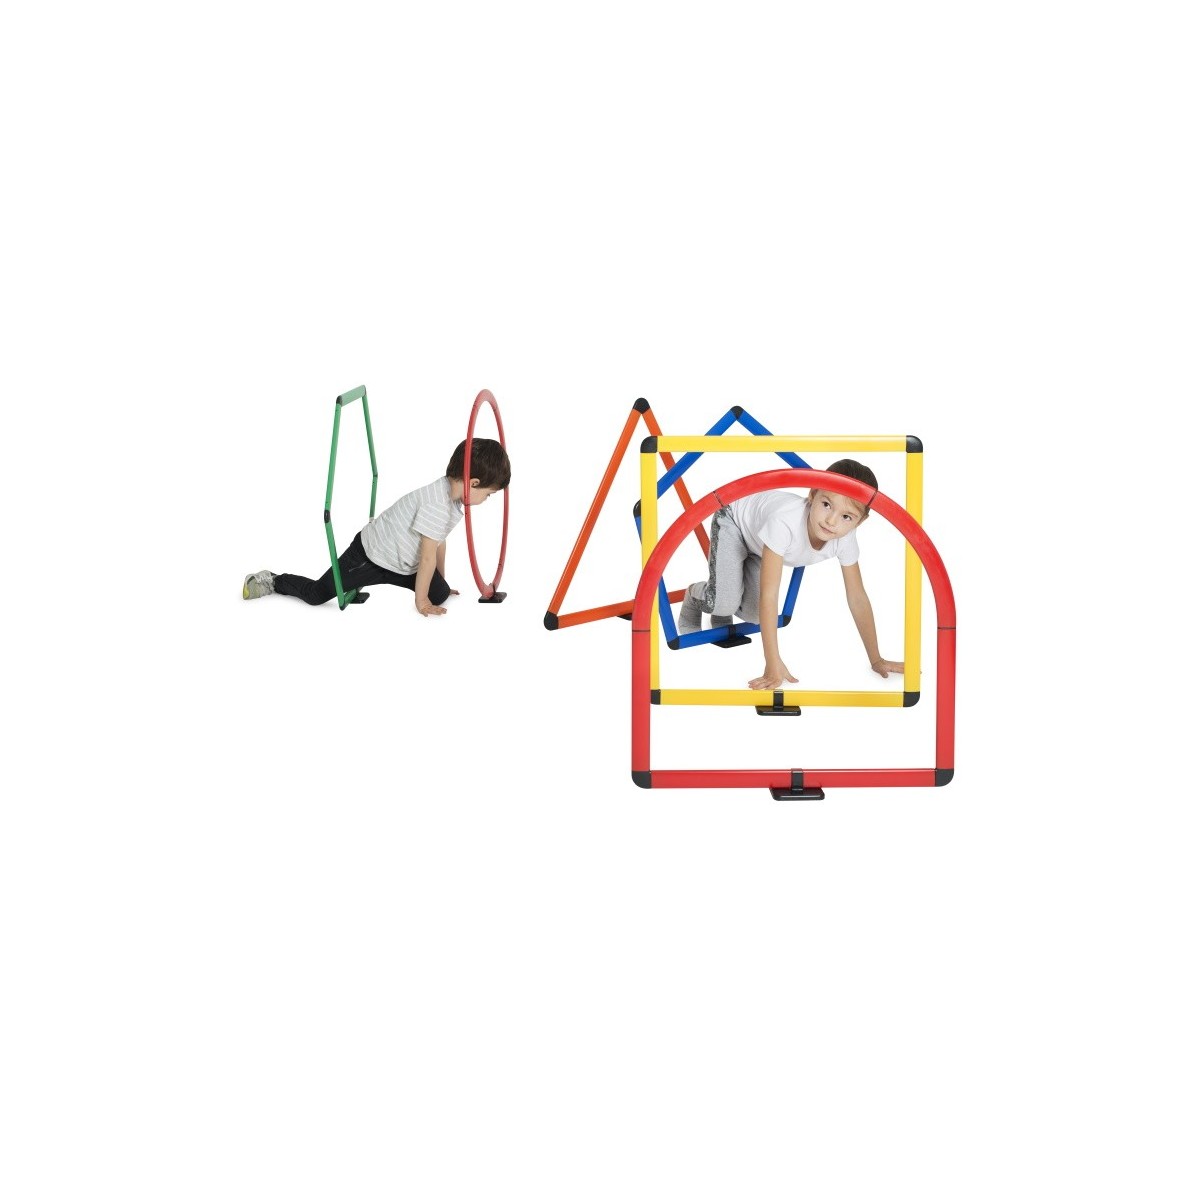 Kit courses d'obstacles géométriques Kit de 6 obstacles géométriques afin de créer des parcours pédagogiques et ludiques.
Le ki